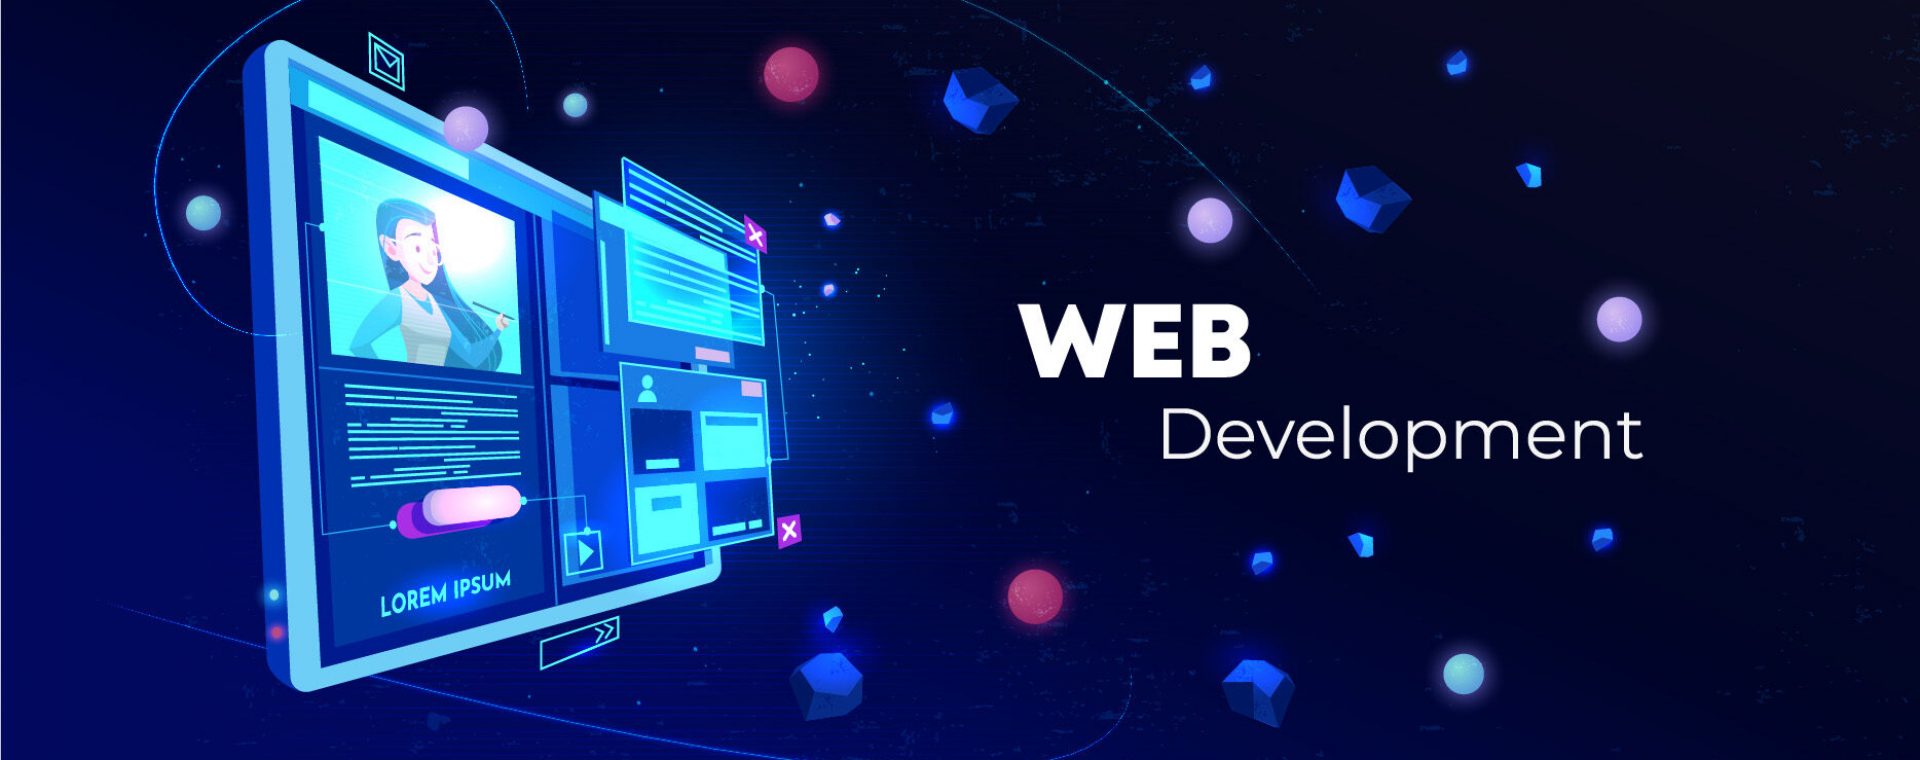 Web DevL